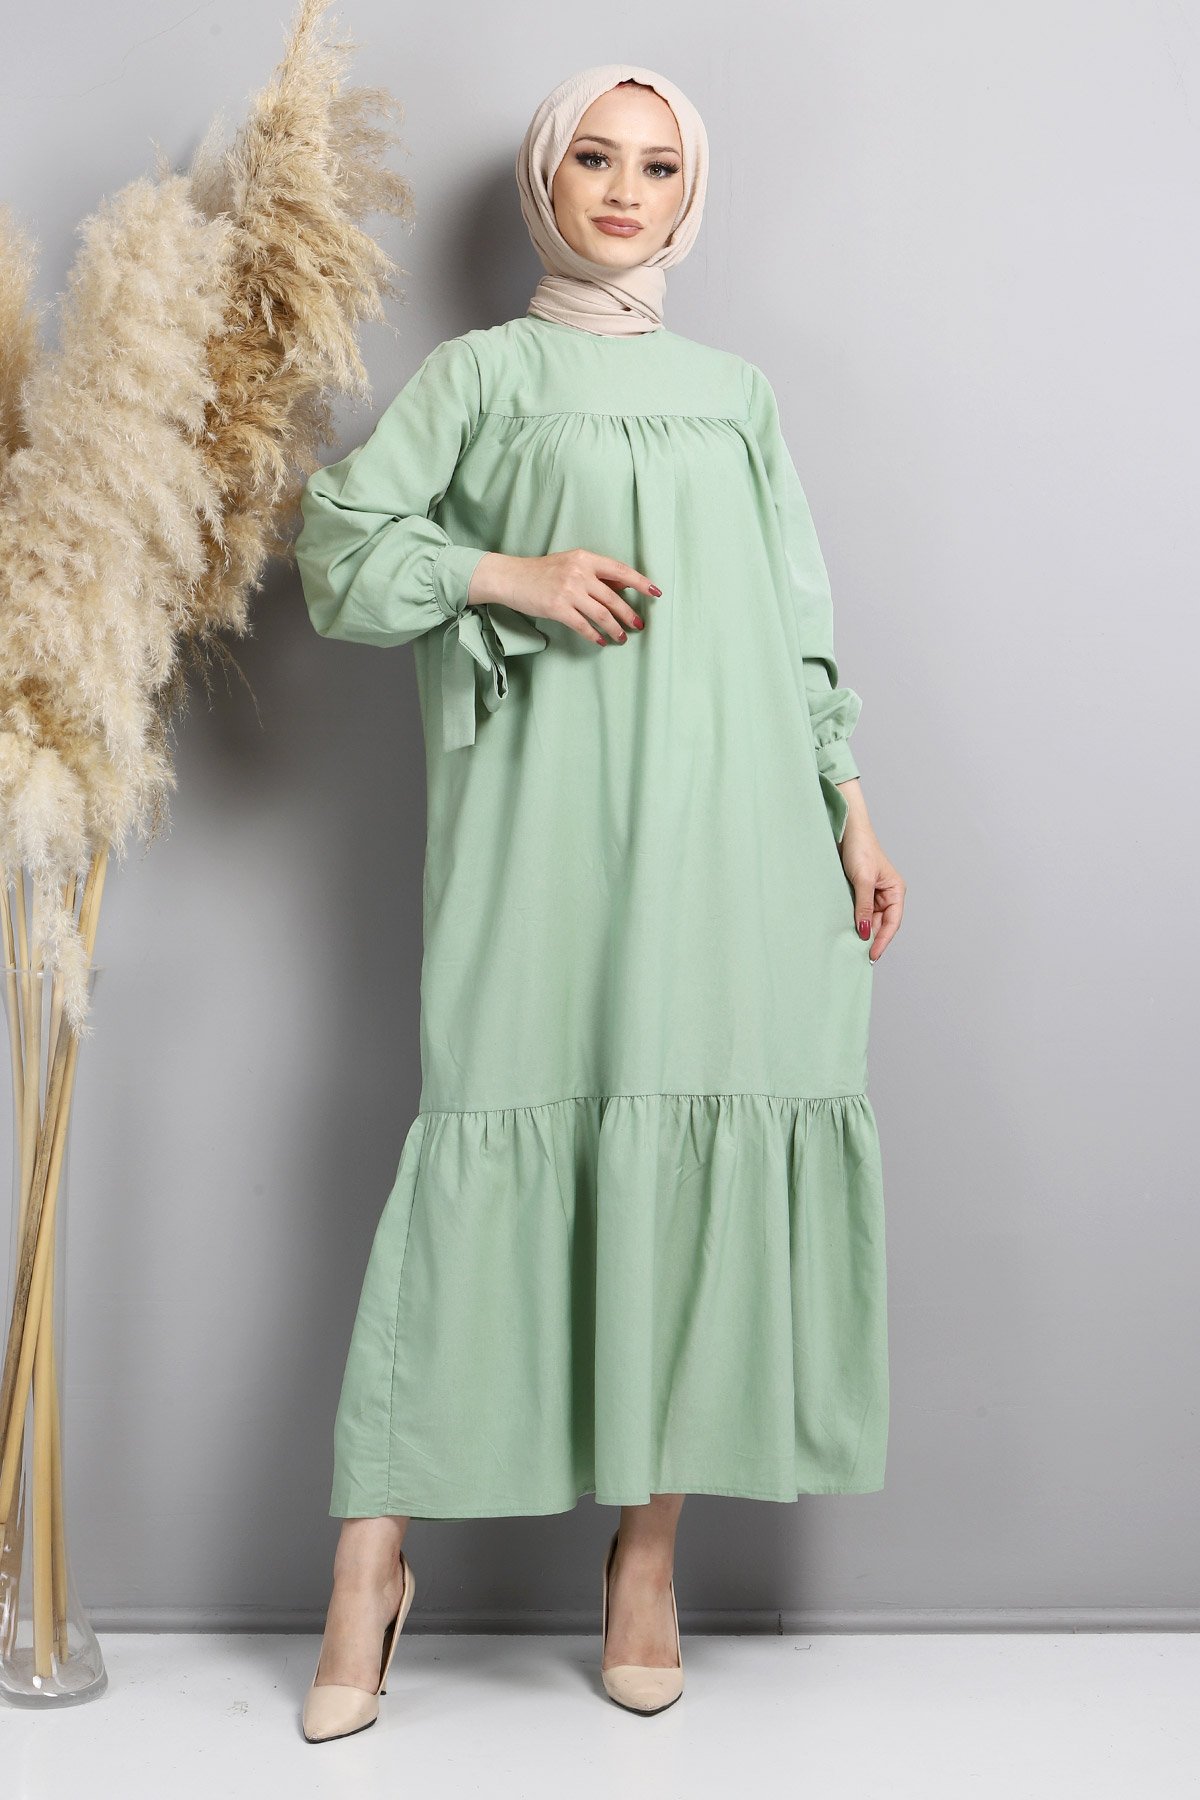 Kol Ucu Bağlamalı Elbise TSD220609 Mint Yeşili